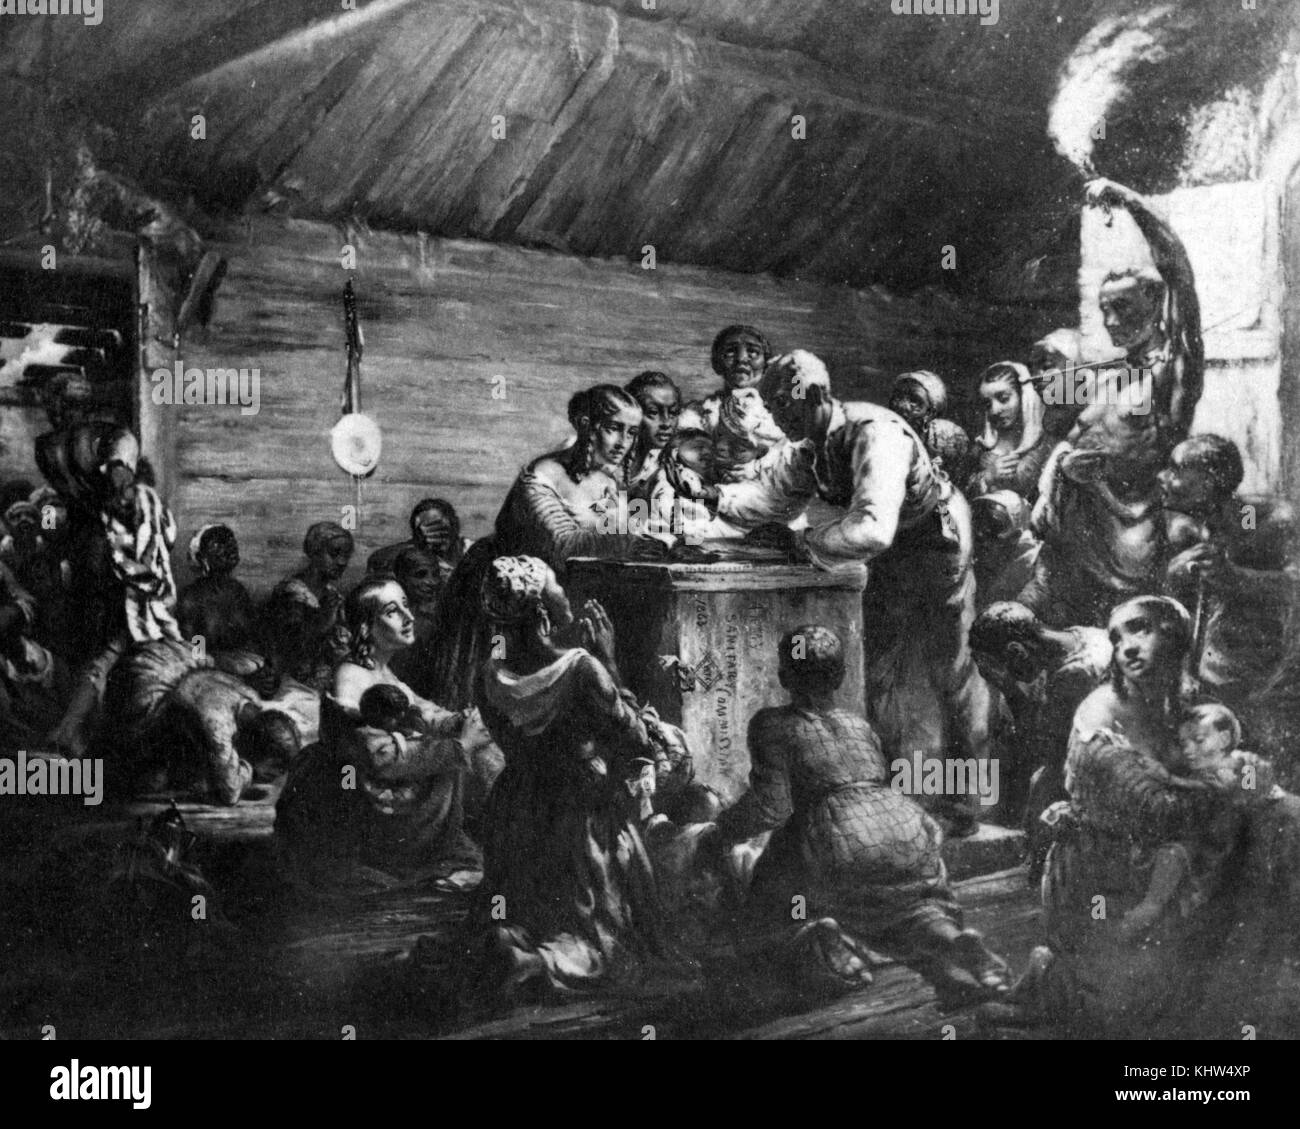 Stampa raffigurante afro-americano di uomini, donne e bambini si sono riuniti intorno ad un uomo con un orologio, aspettando il Proclama di emancipazione. Datata del XIX secolo Foto Stock